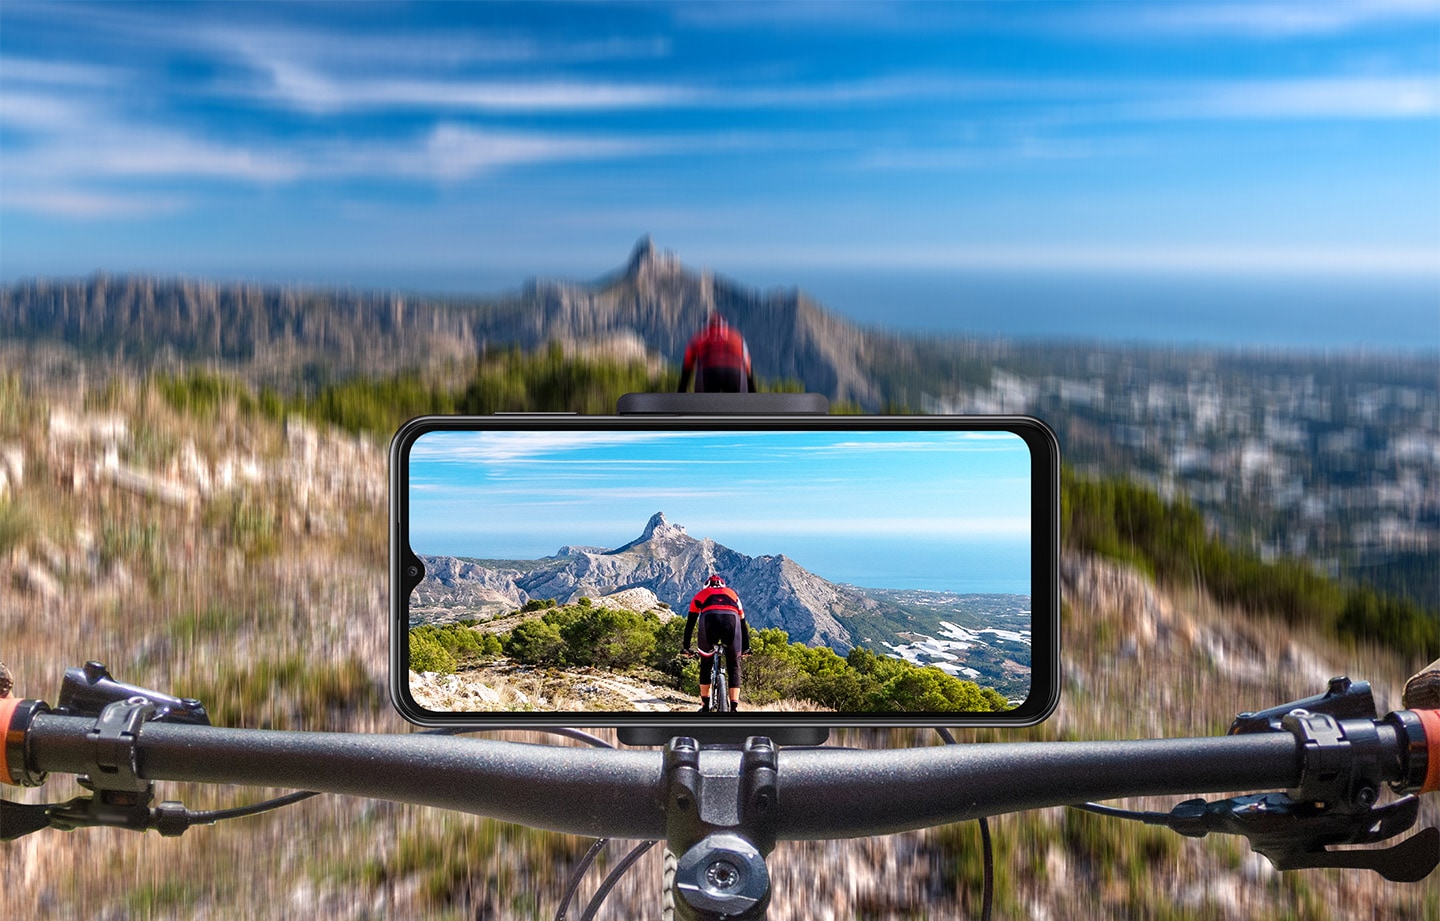 Galaxy A23 được gắn ở chế độ ngang trên ghi đông xe đạp. Ở phía trước, một địa hình đồi núi mờ ảo được hiển thị và trên màn hình, hình ảnh rõ ràng về địa hình cũng như người lái phía trước sẽ được chụp.